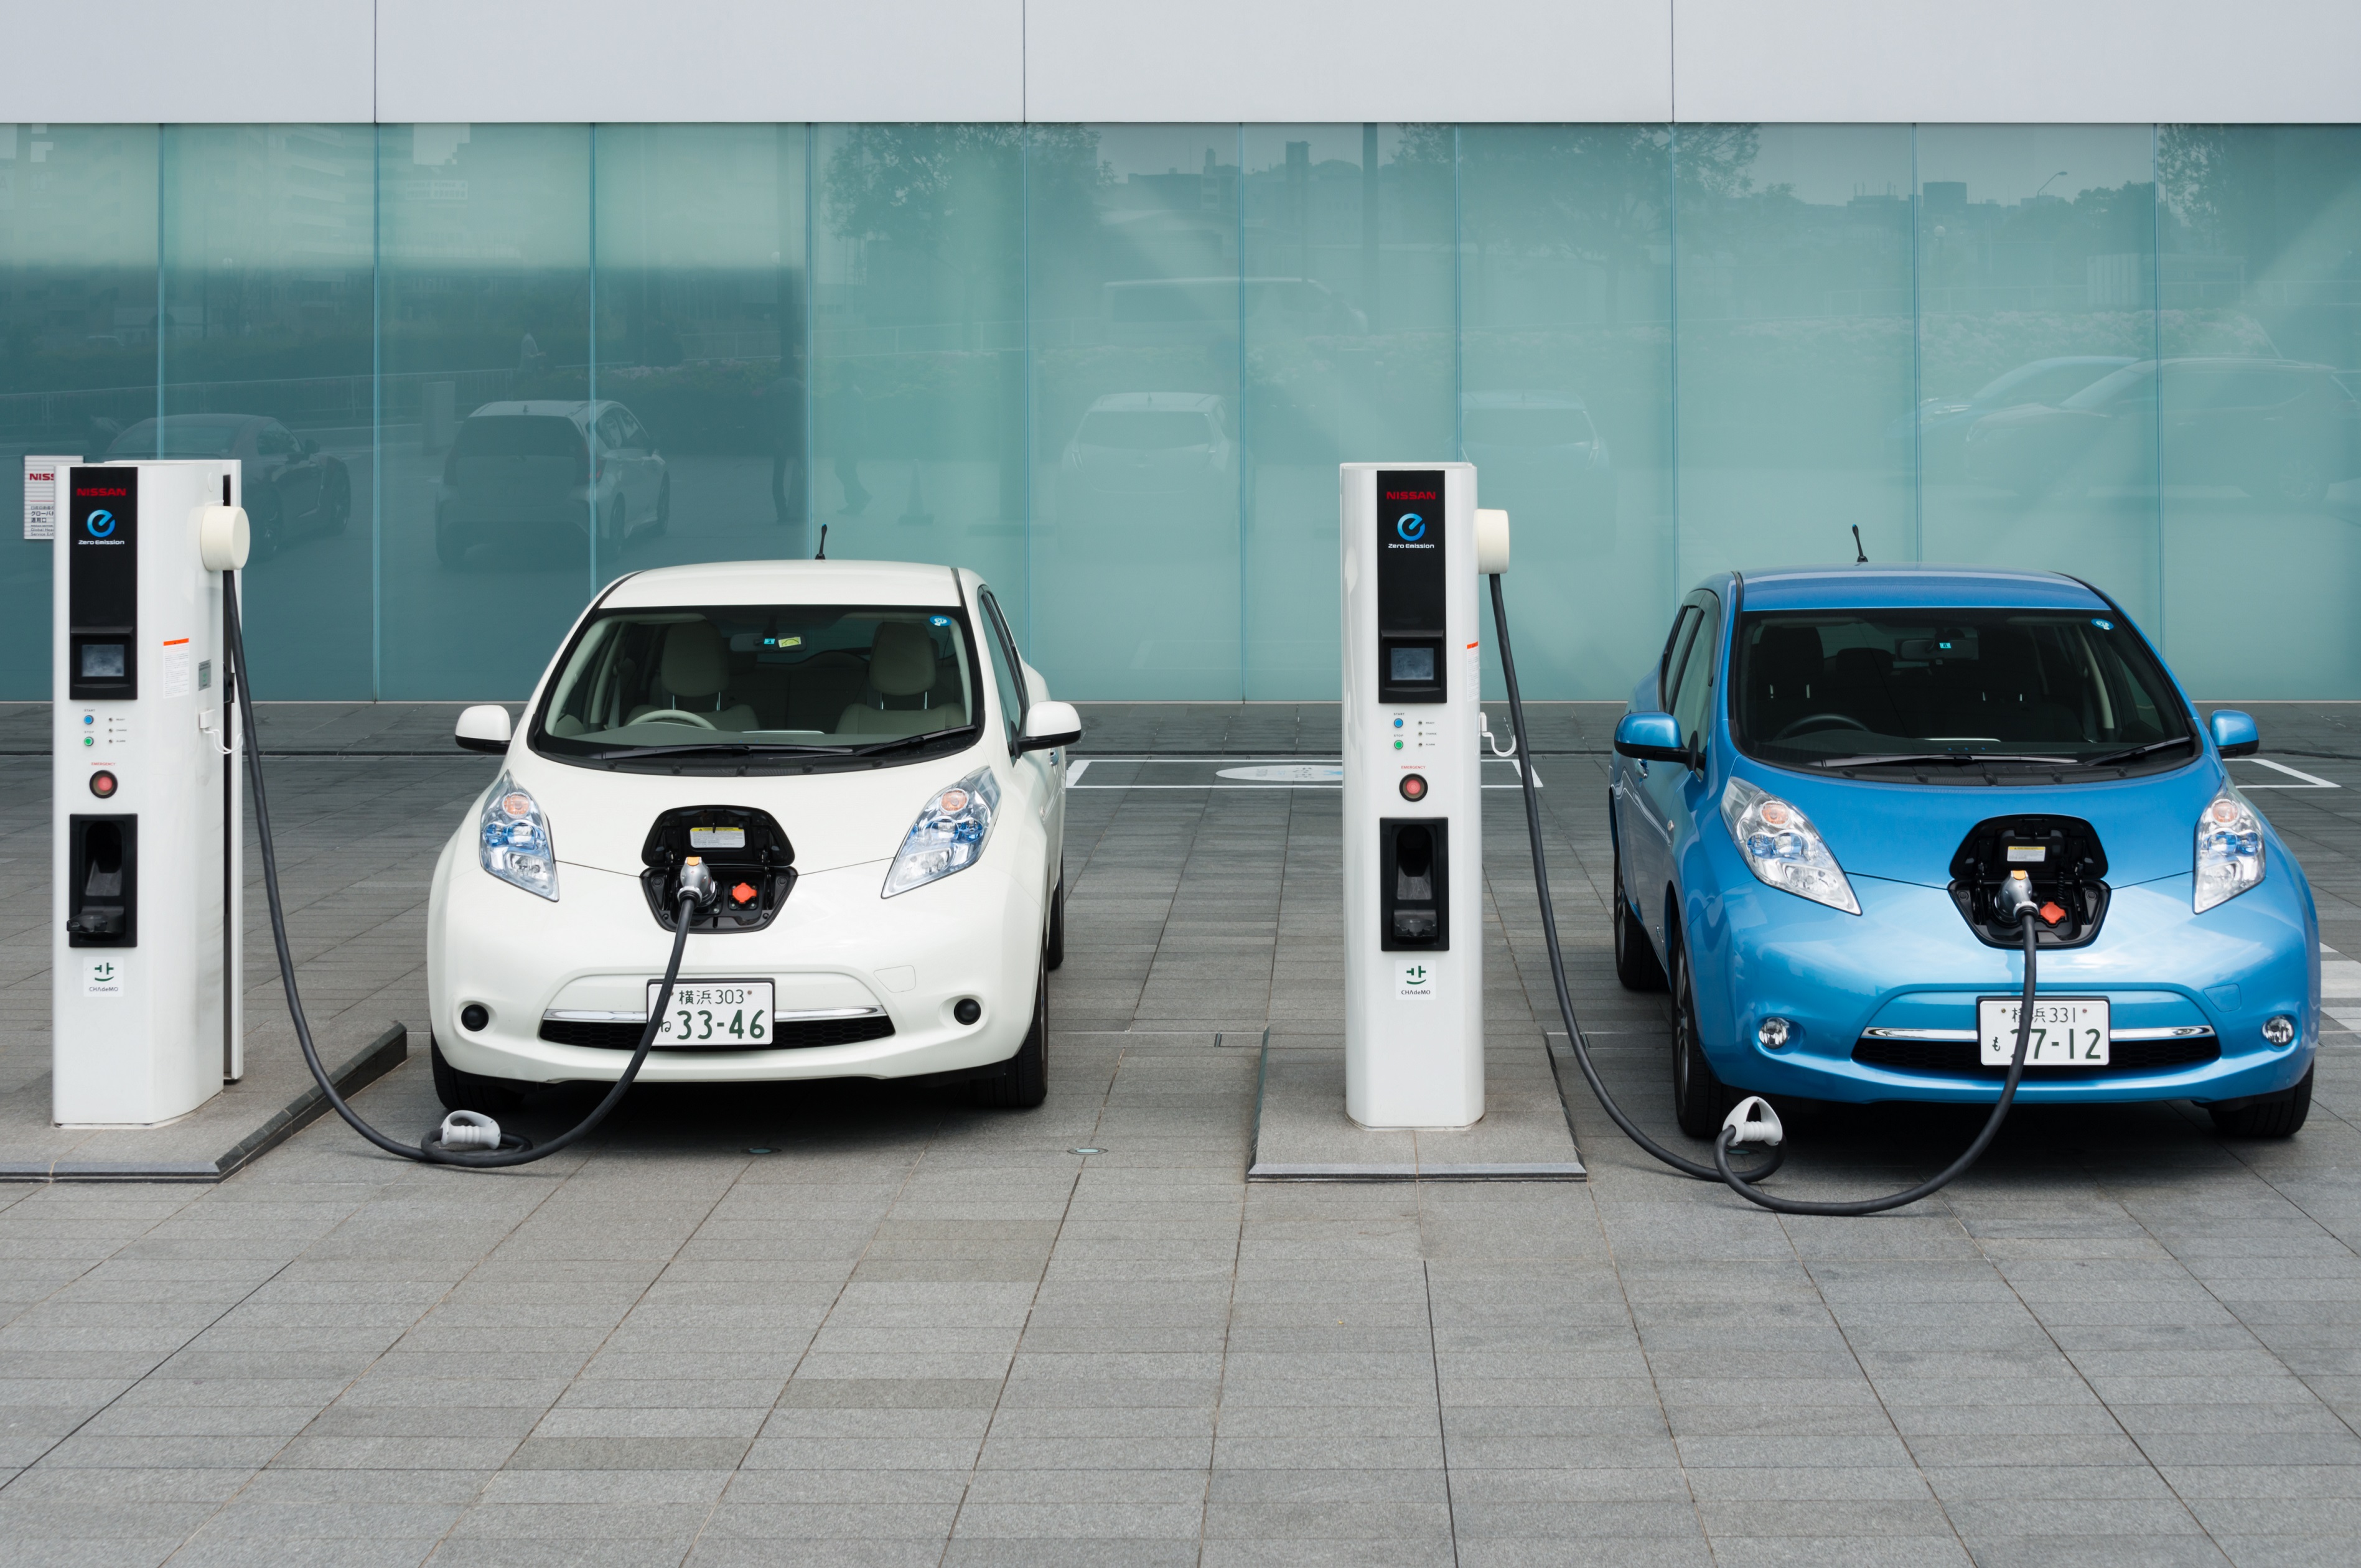 La voiture électrique, plus écologique qu'un véhicule à combustion?